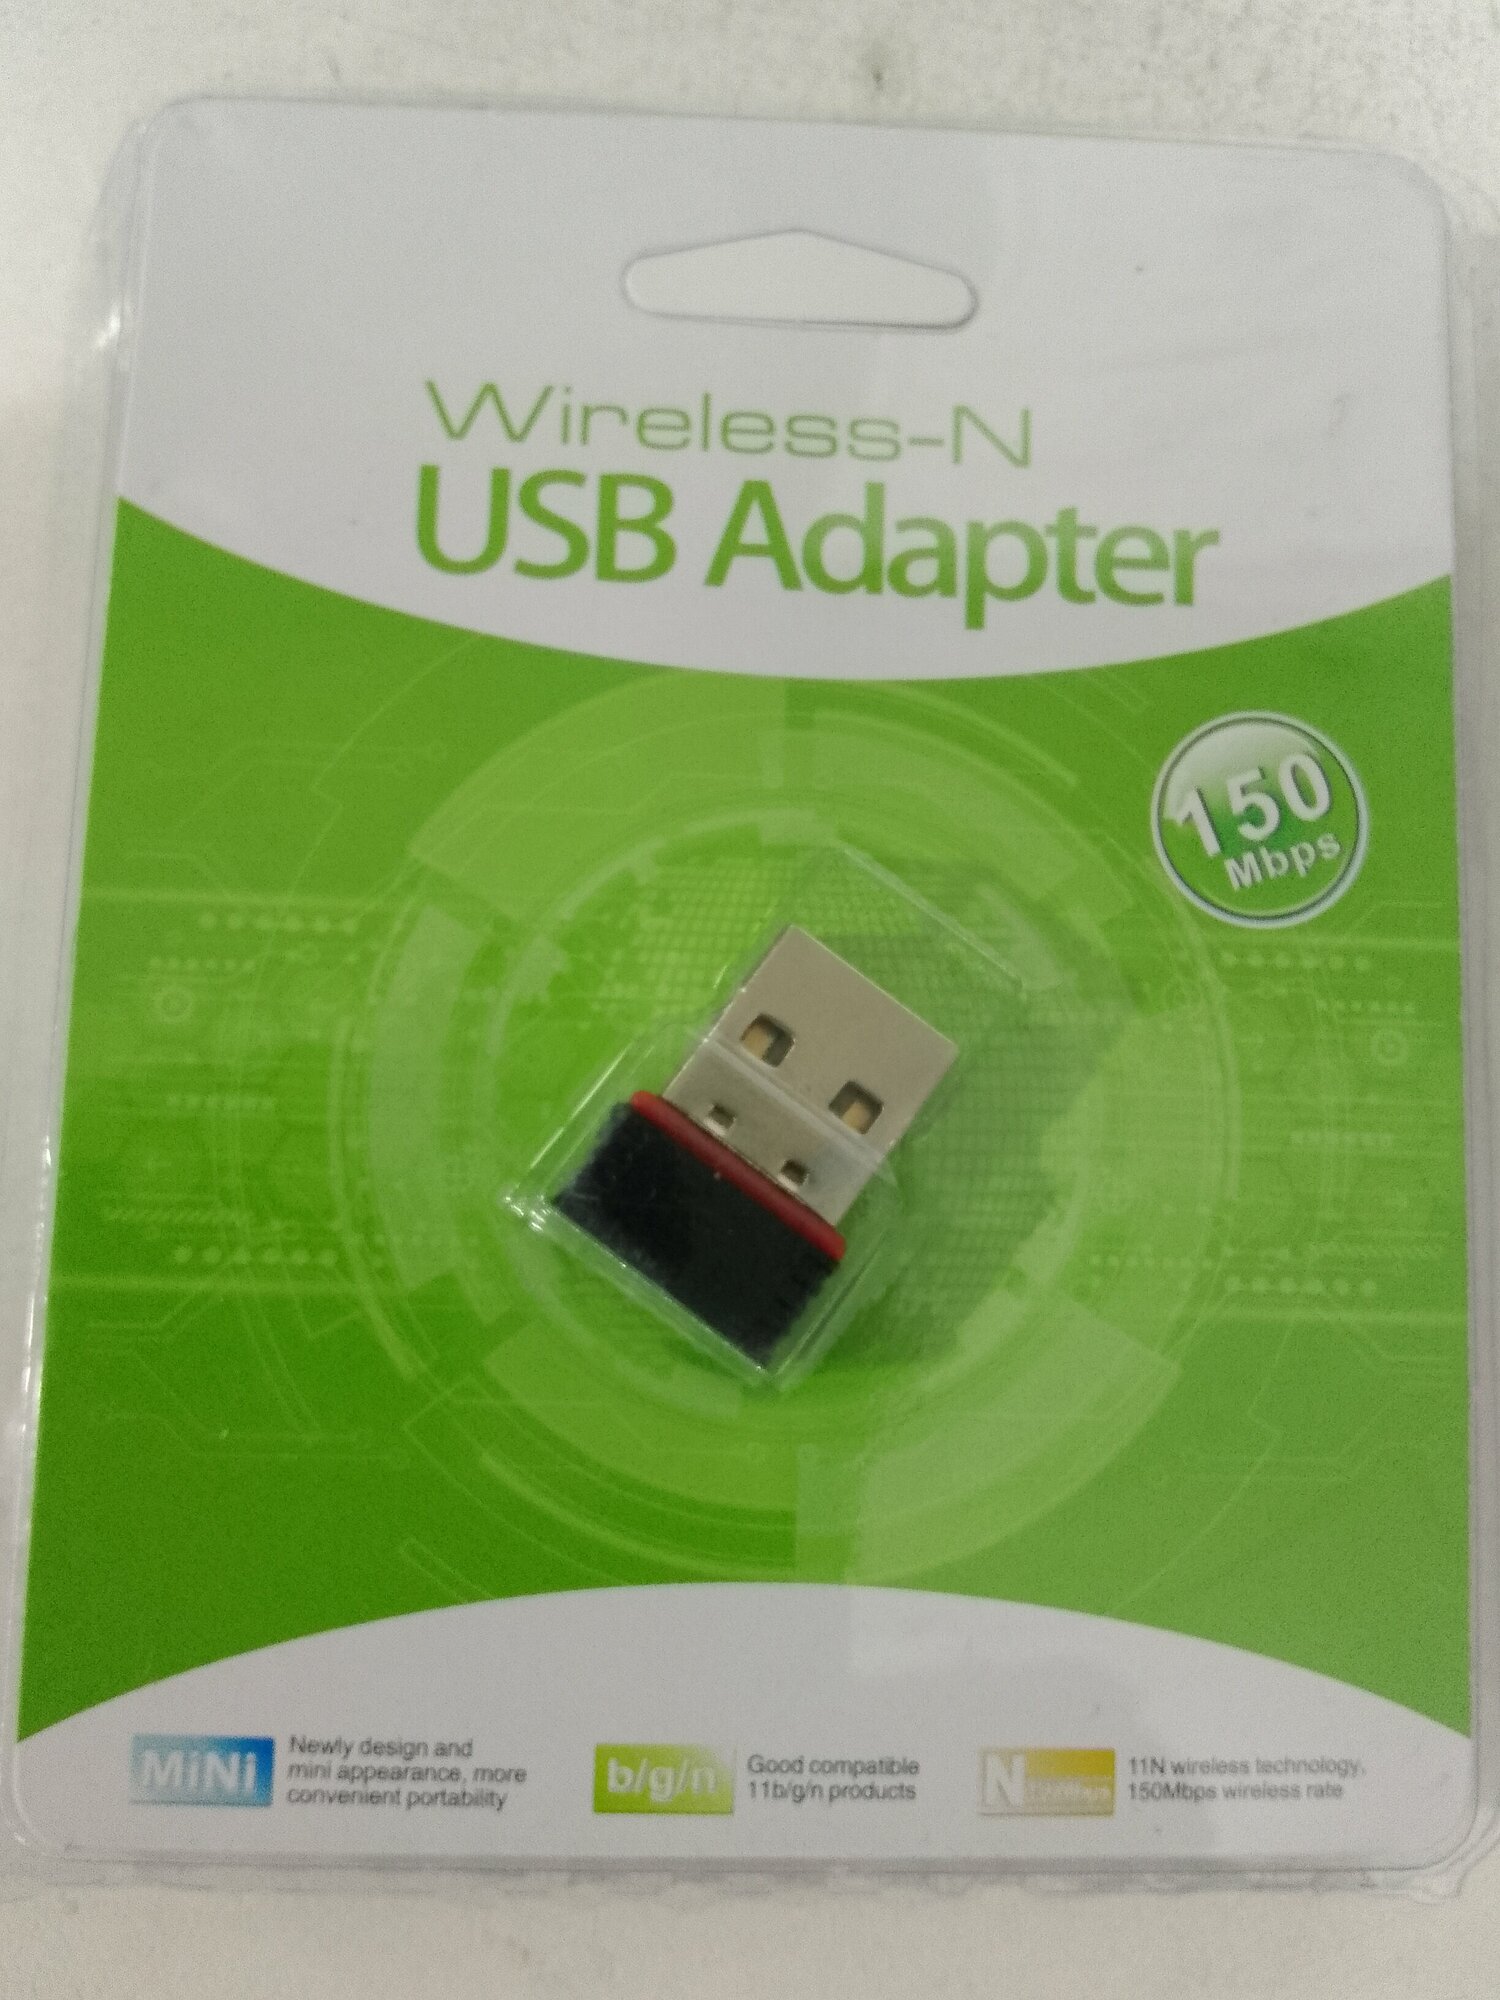 WI-Fi адаптер W01 USB 2.0 (MT7601) (150 mbps)